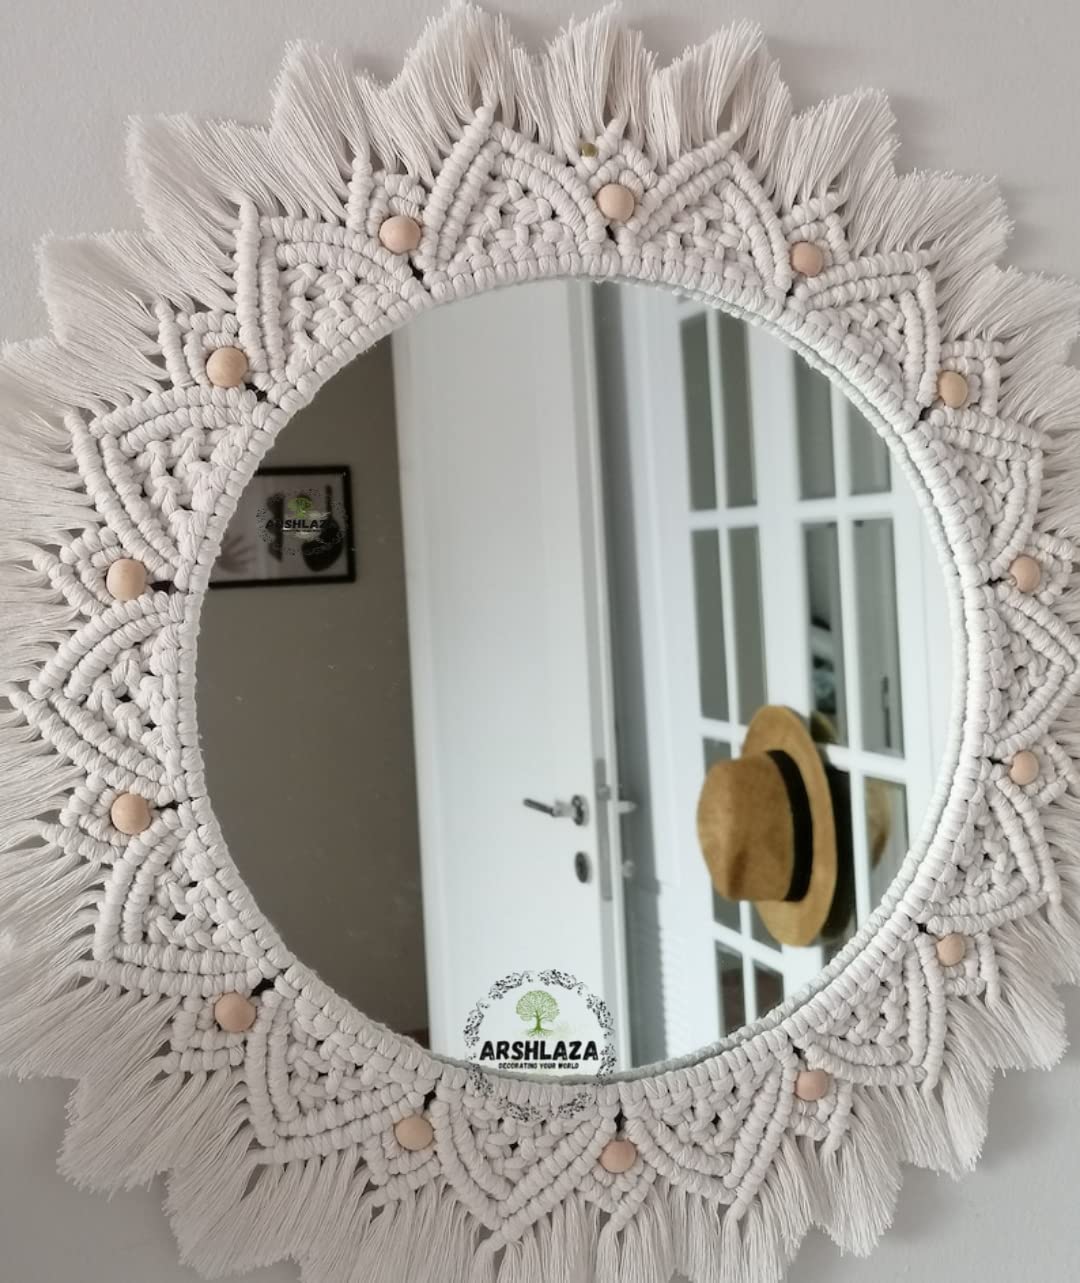 Macrame Hanging Wall Mirror